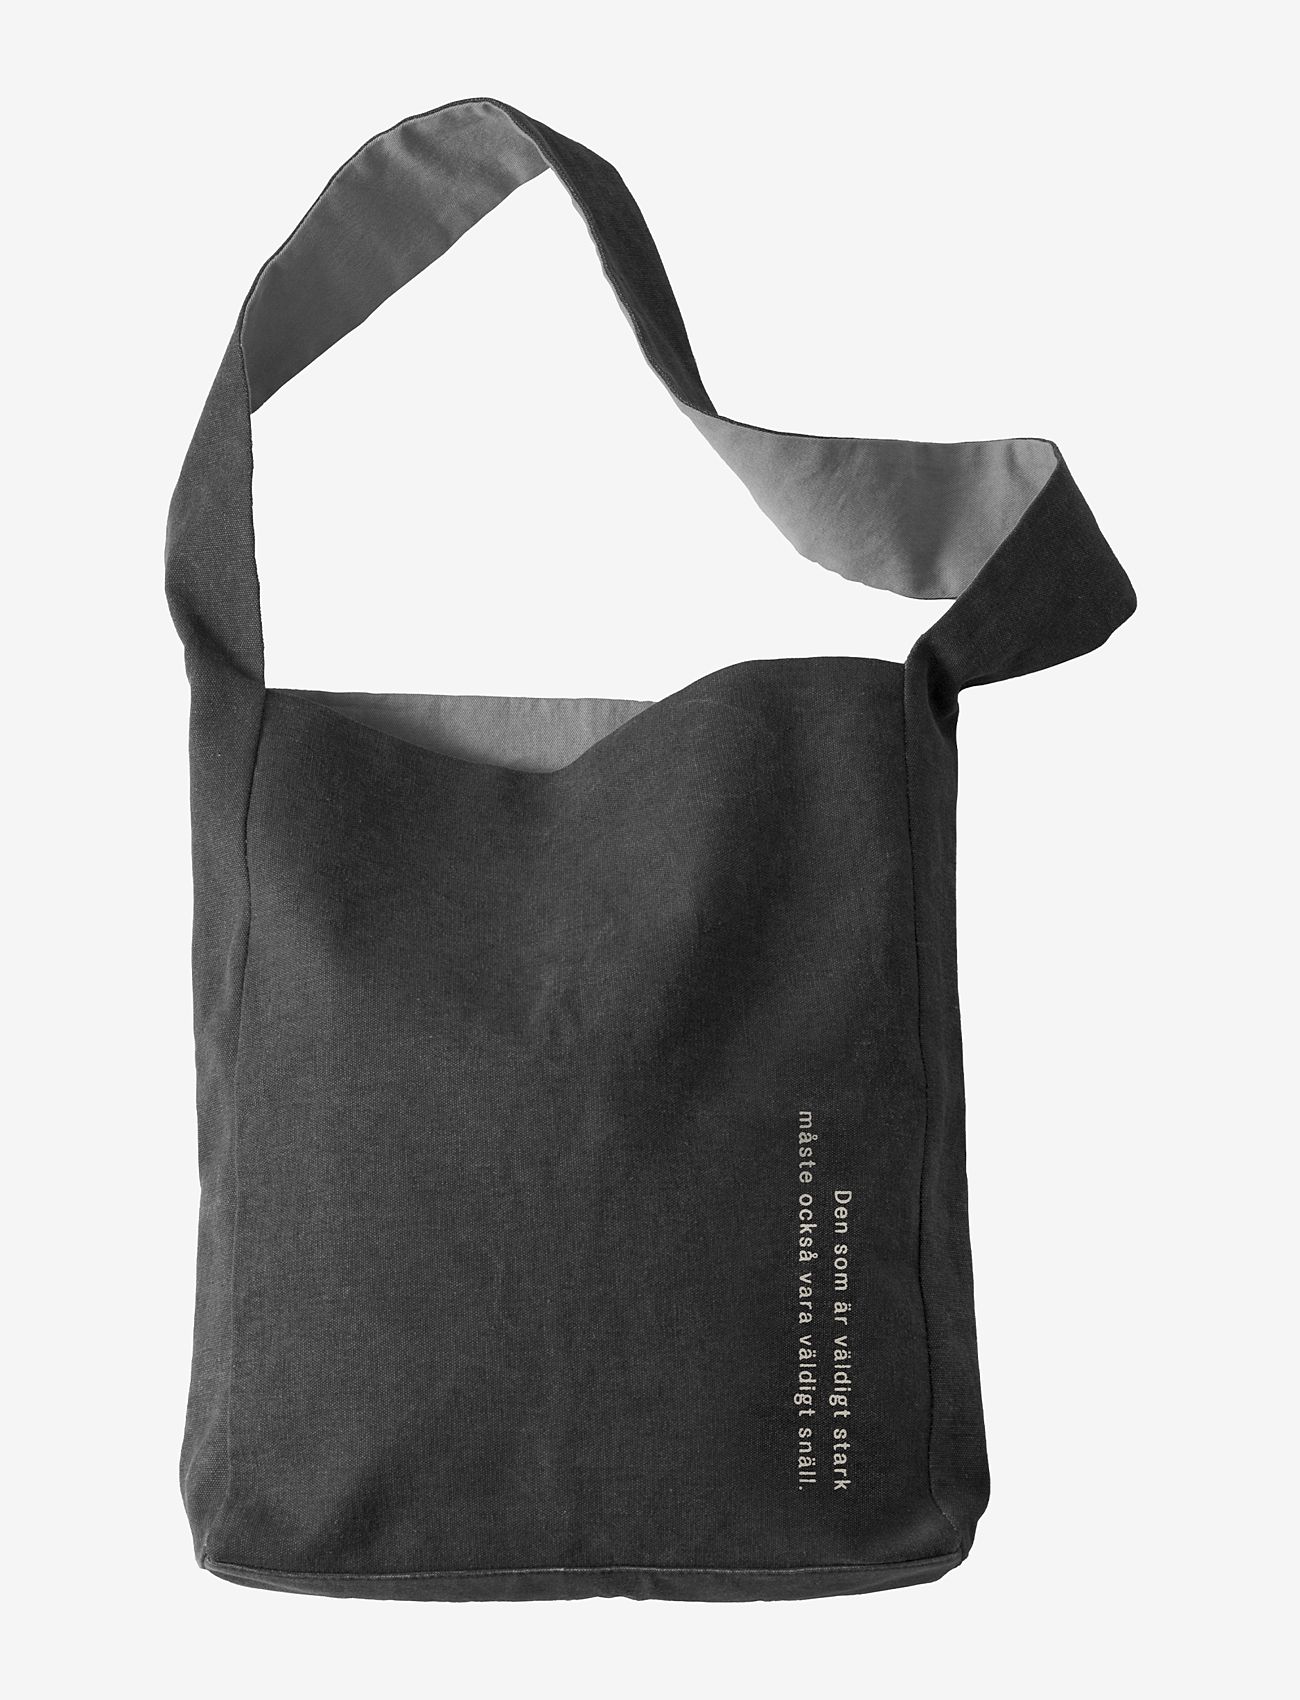 Design House Stockholm - Astrid Lindgren Tote bag - tote bags - black - 0